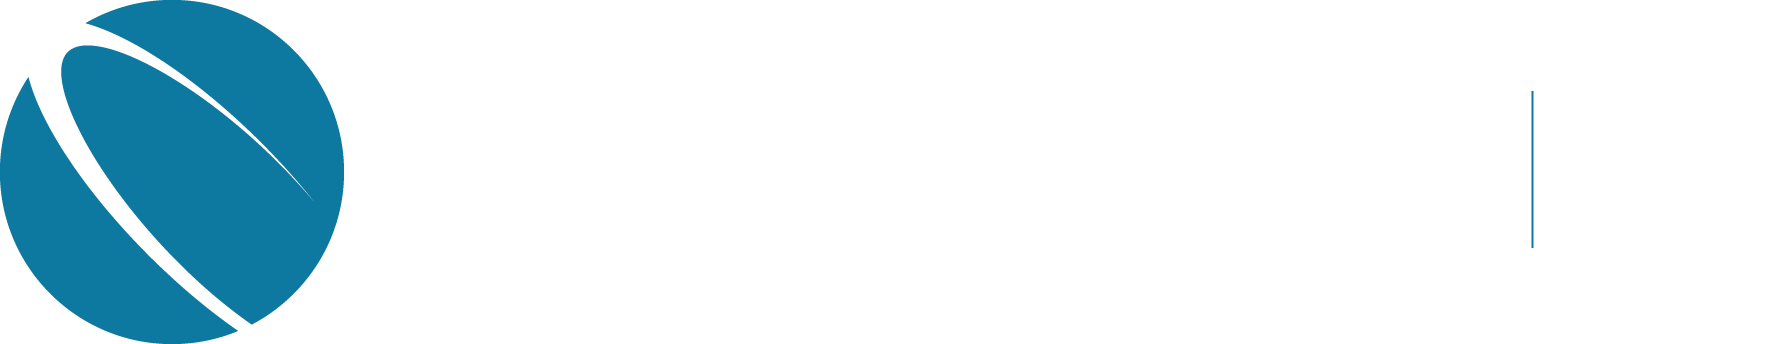 Space Tech Expo logo